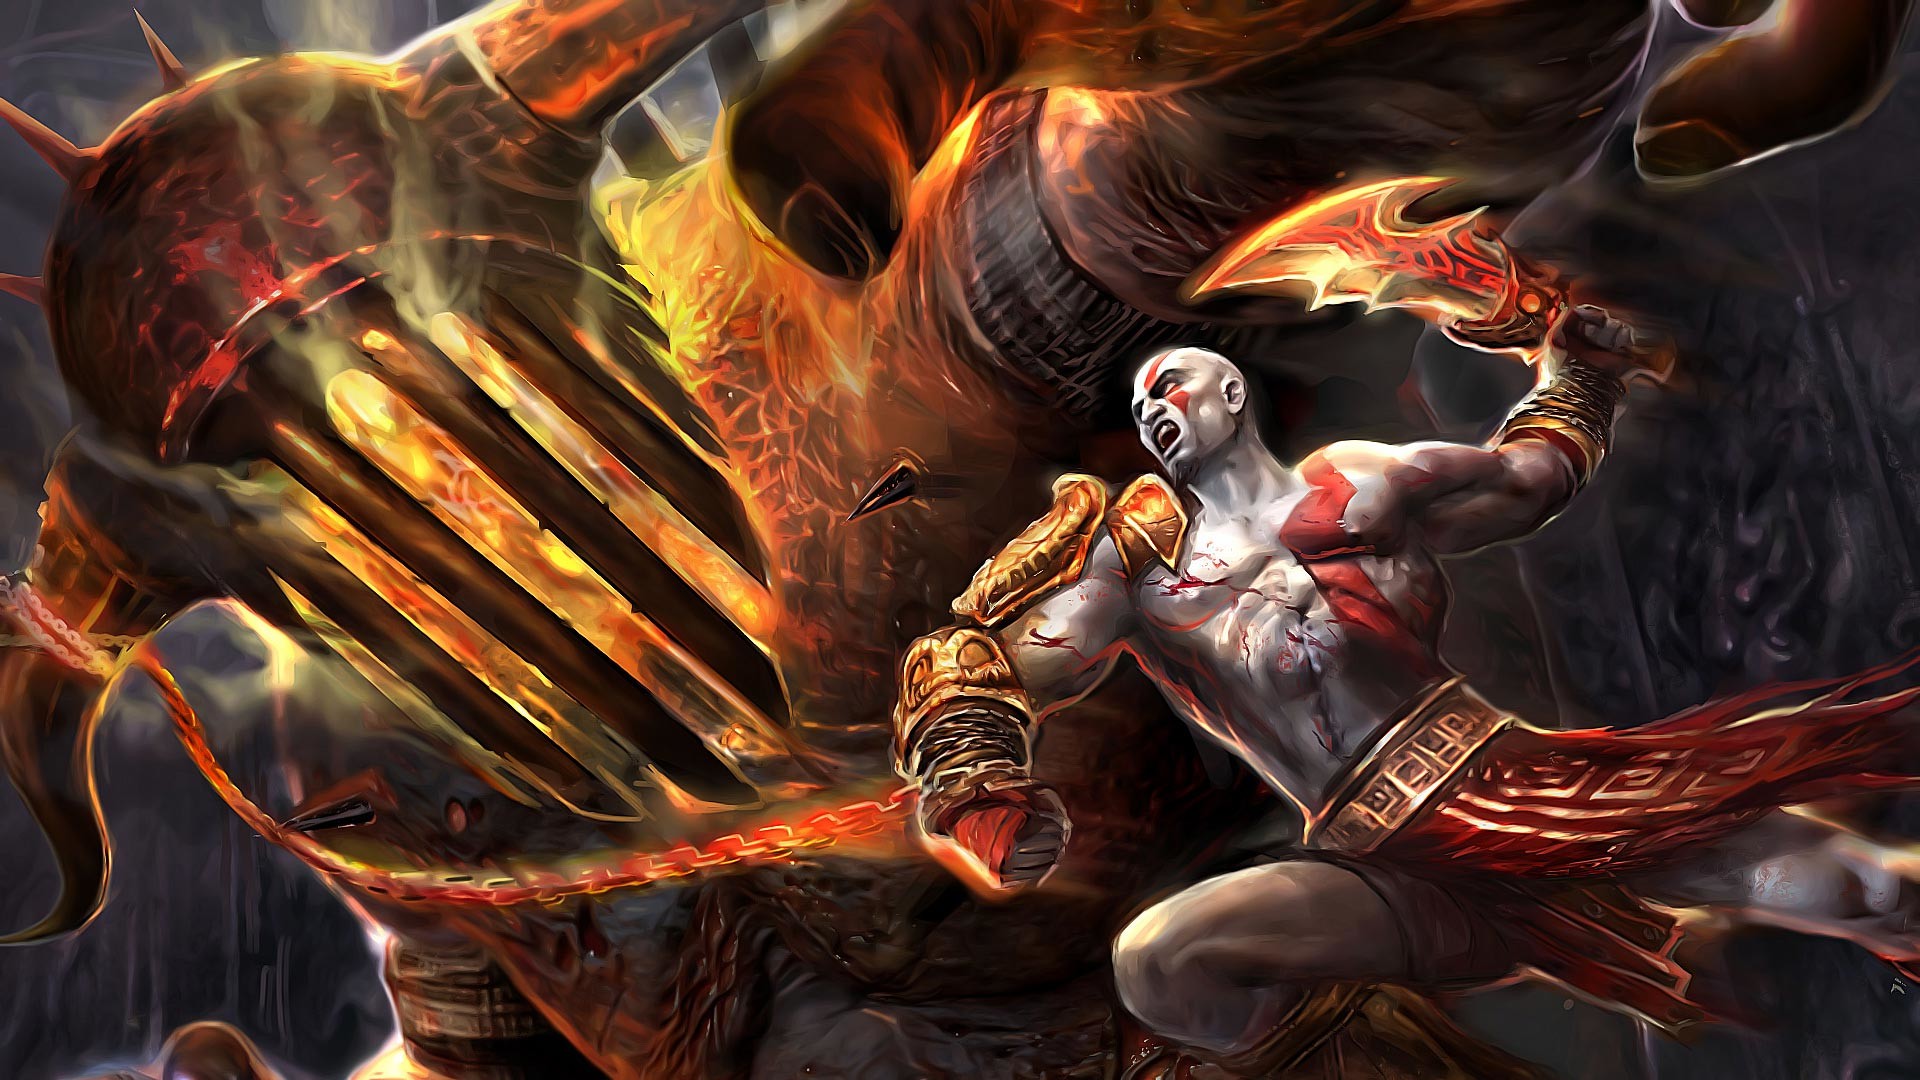 1920x1080 Download now full hd wallpaper god of war 4 kratos fire chain sword monster  iron ...